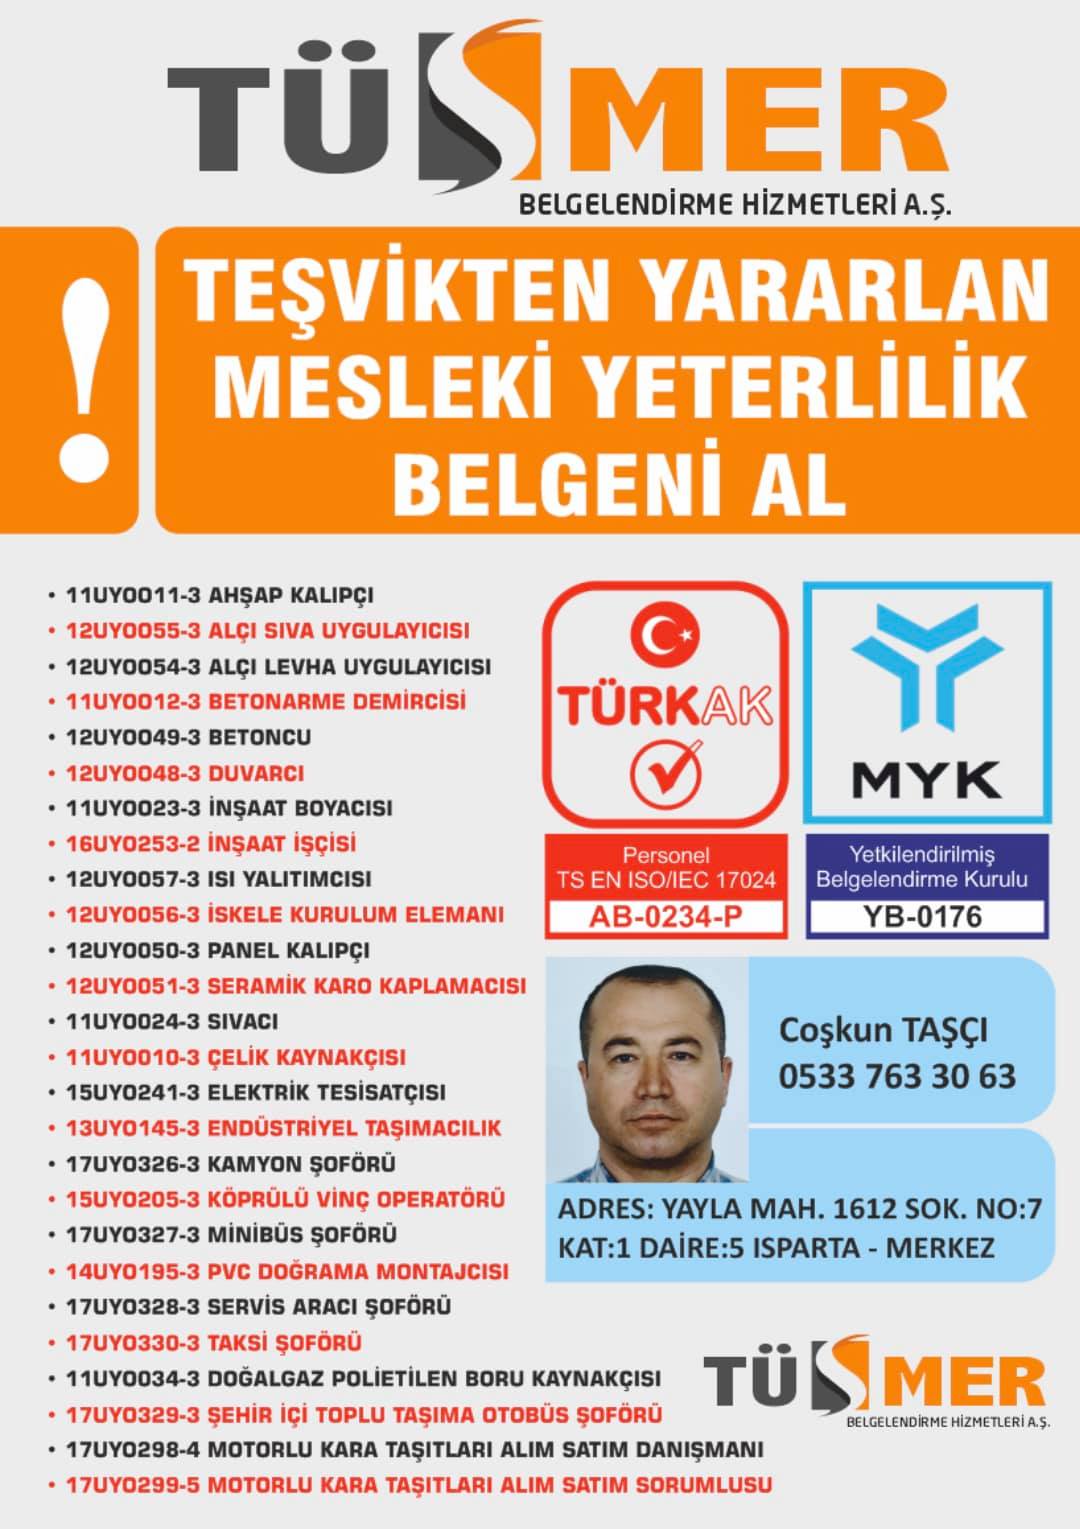 MYK MESLEKİ YETERLİLİK BELGESİ Mustafa Kemal PaşaAvcılar İstanbul